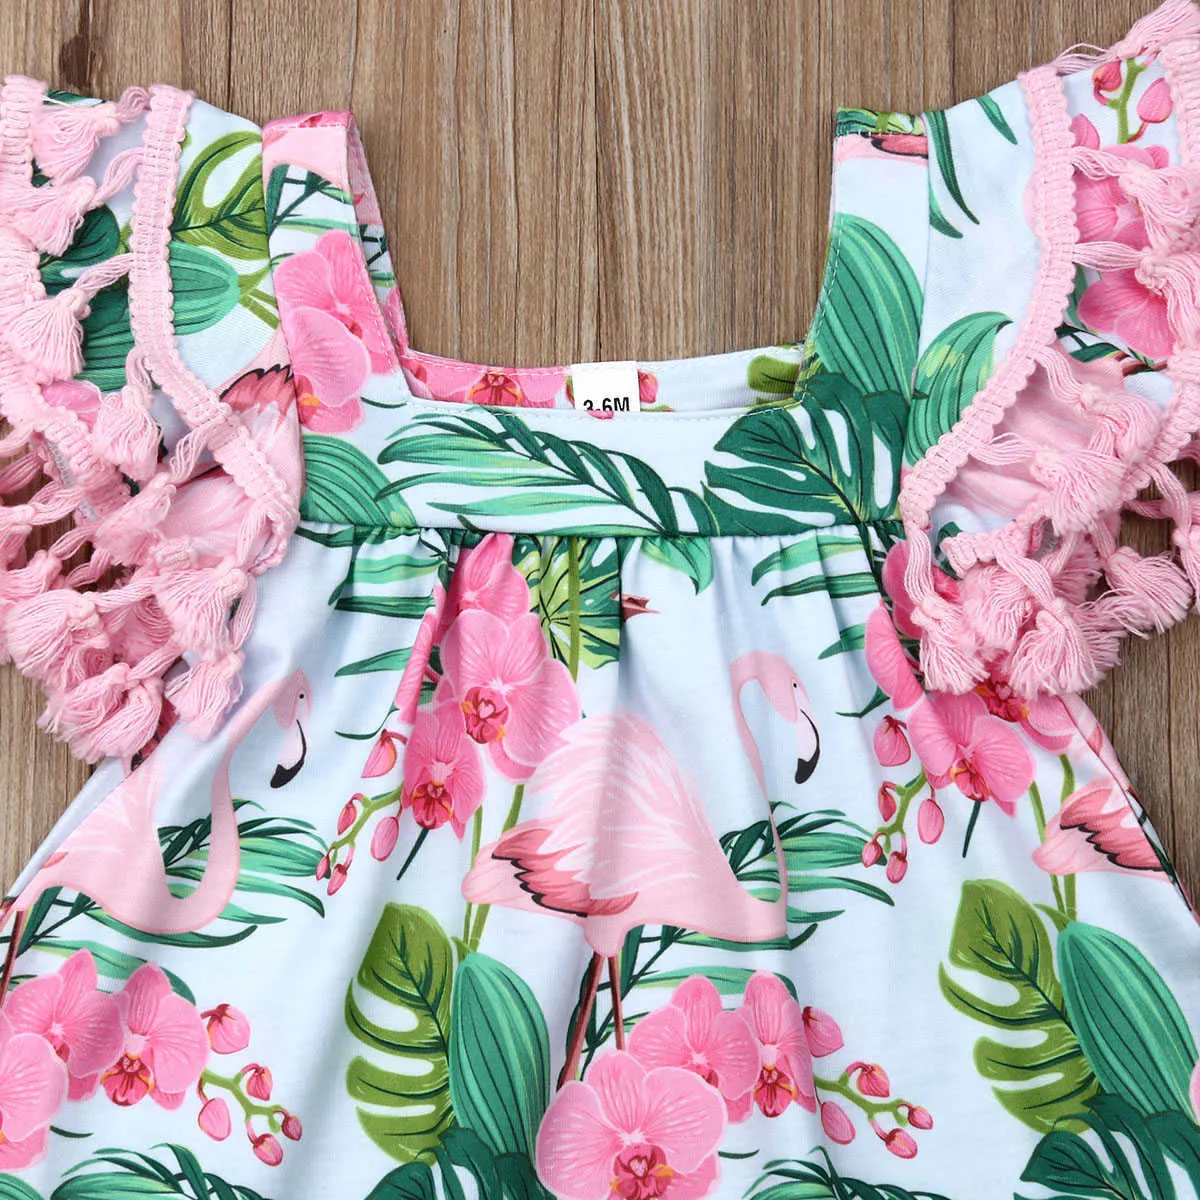 2019 nyfödda babyklänningar för flickor småbarn kläder sommar tofs kort ärm blomma flamingo flickor klänning baby flickor kläder q0716